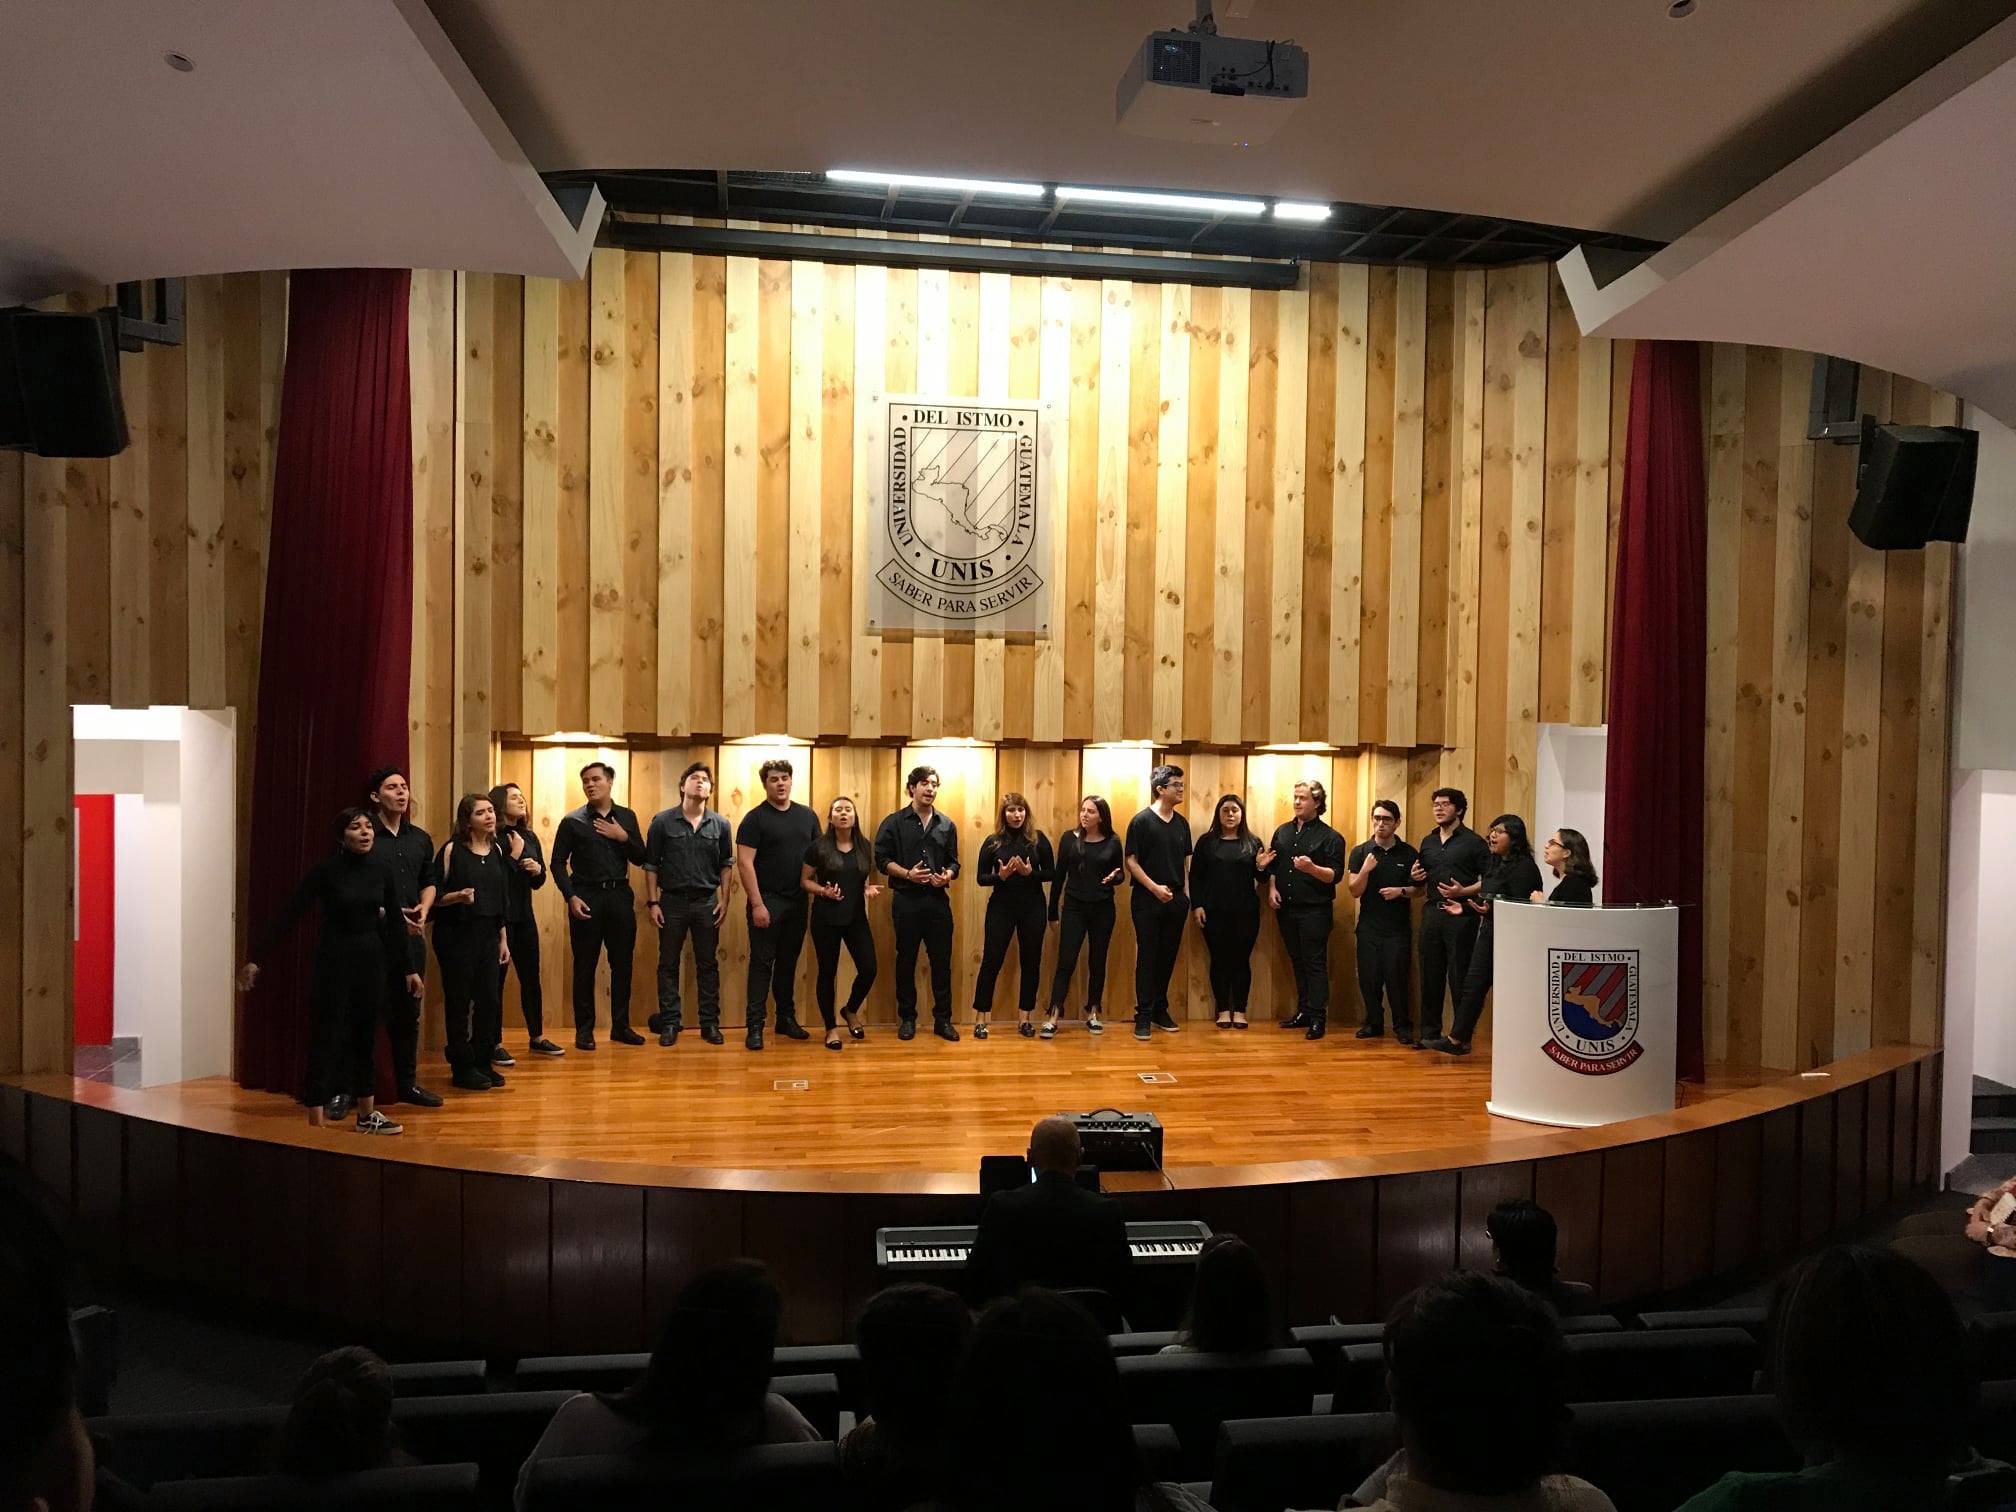 El coro de la Universidad del Istmo es dirigido por el licenciado Ricardo Velásquez. (Foto Prensa Libre: Facebook Coro Universidad del Istmo).